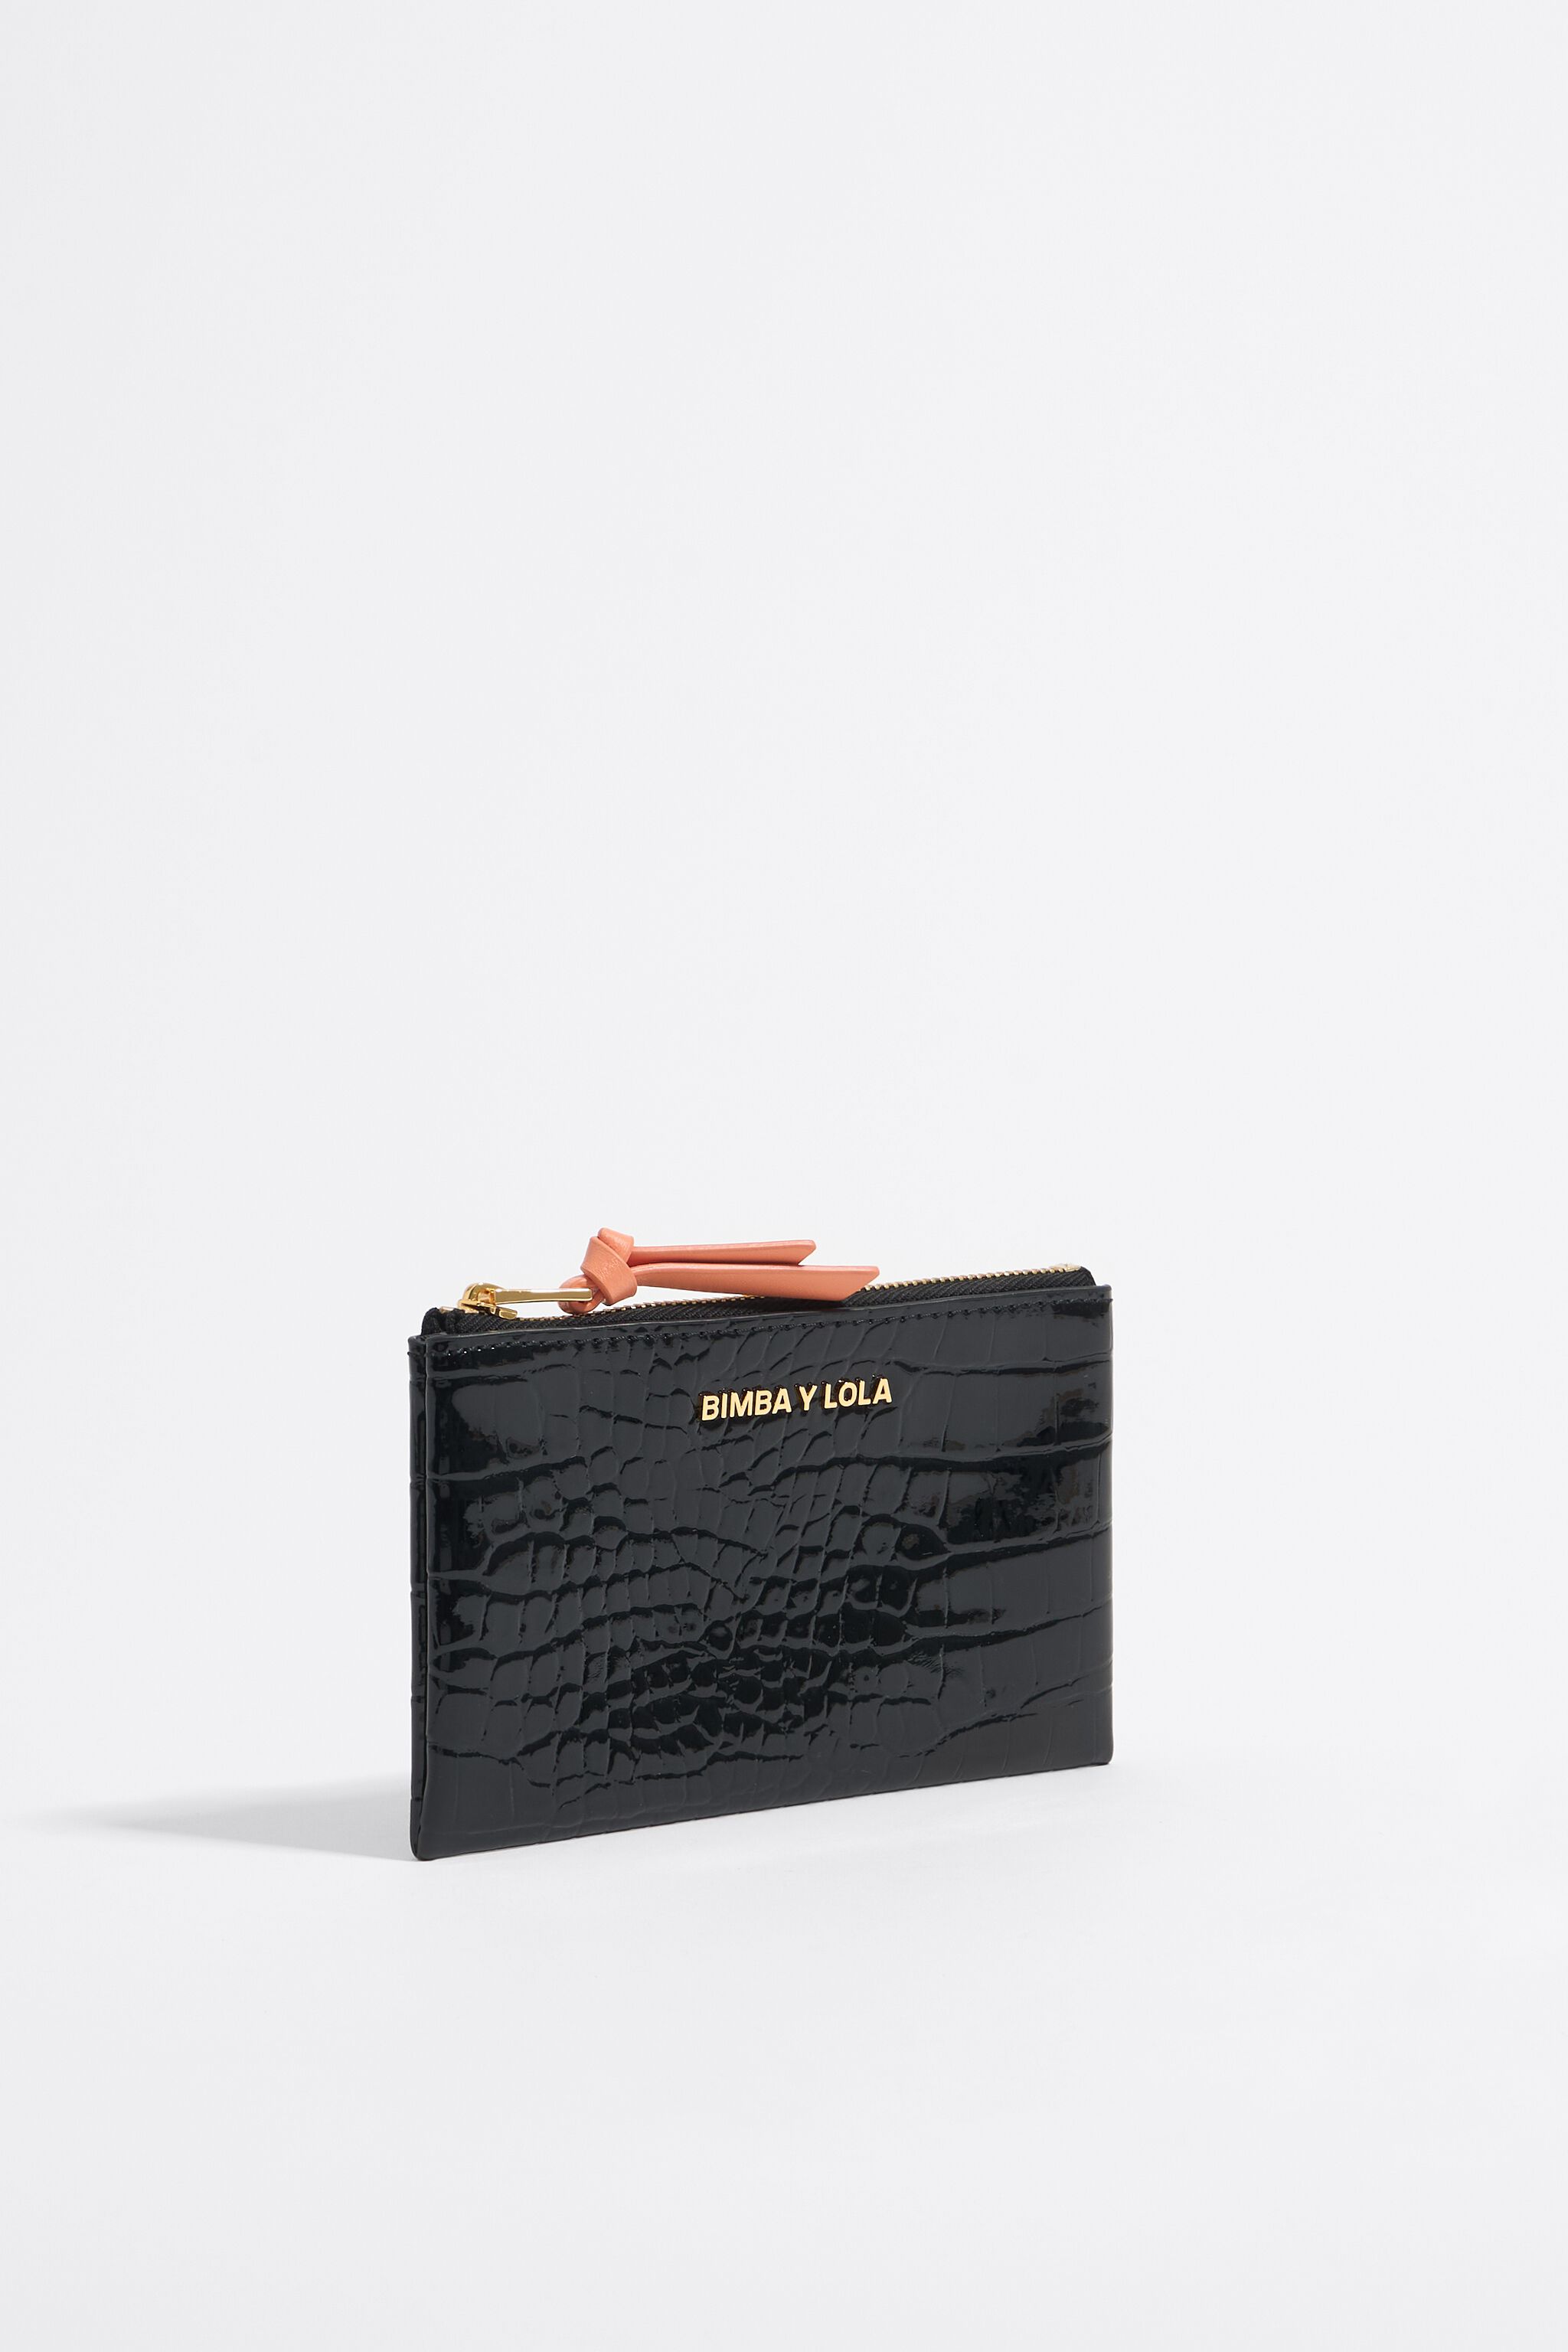 Coral nylon double purse